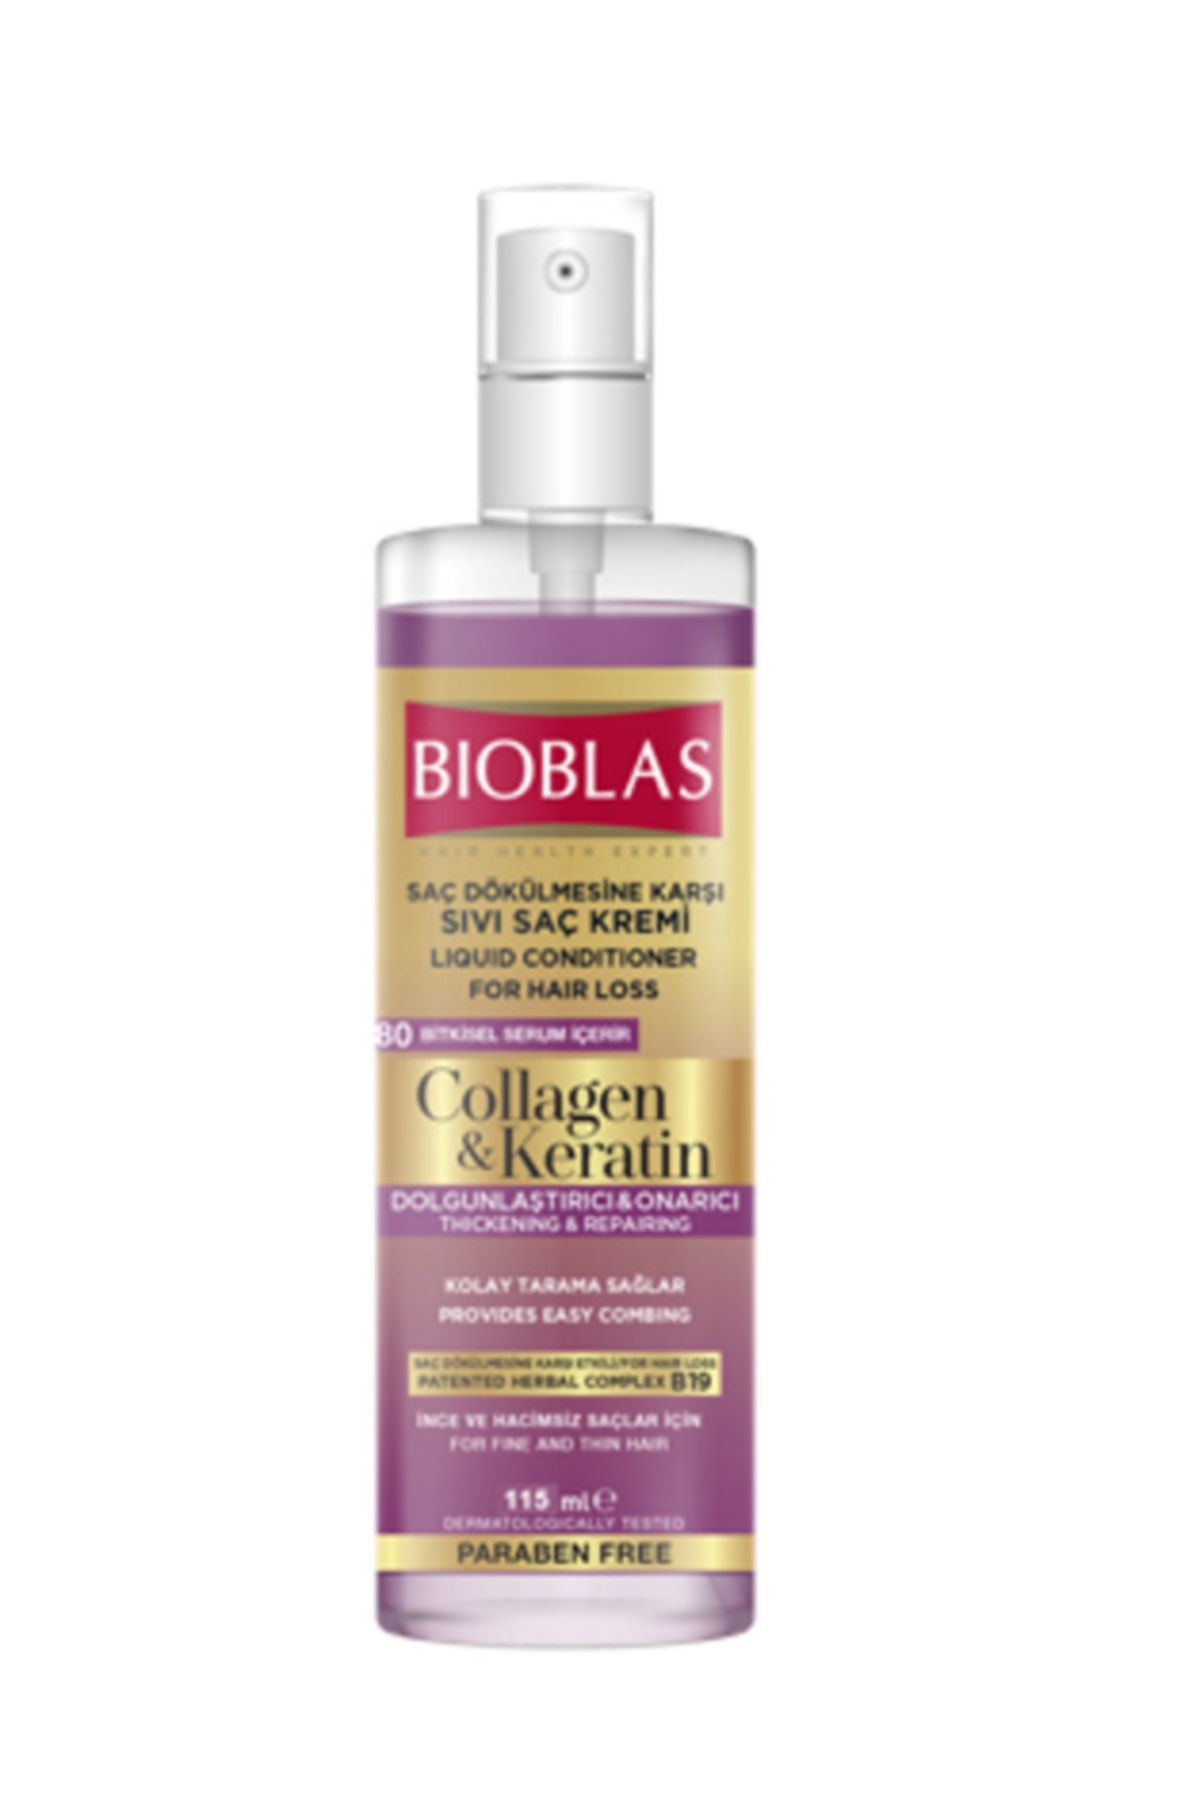 Bioblas Saç Dökülmesine Karşı Collagen&keratin Sıvı Saç Kremi 115ml